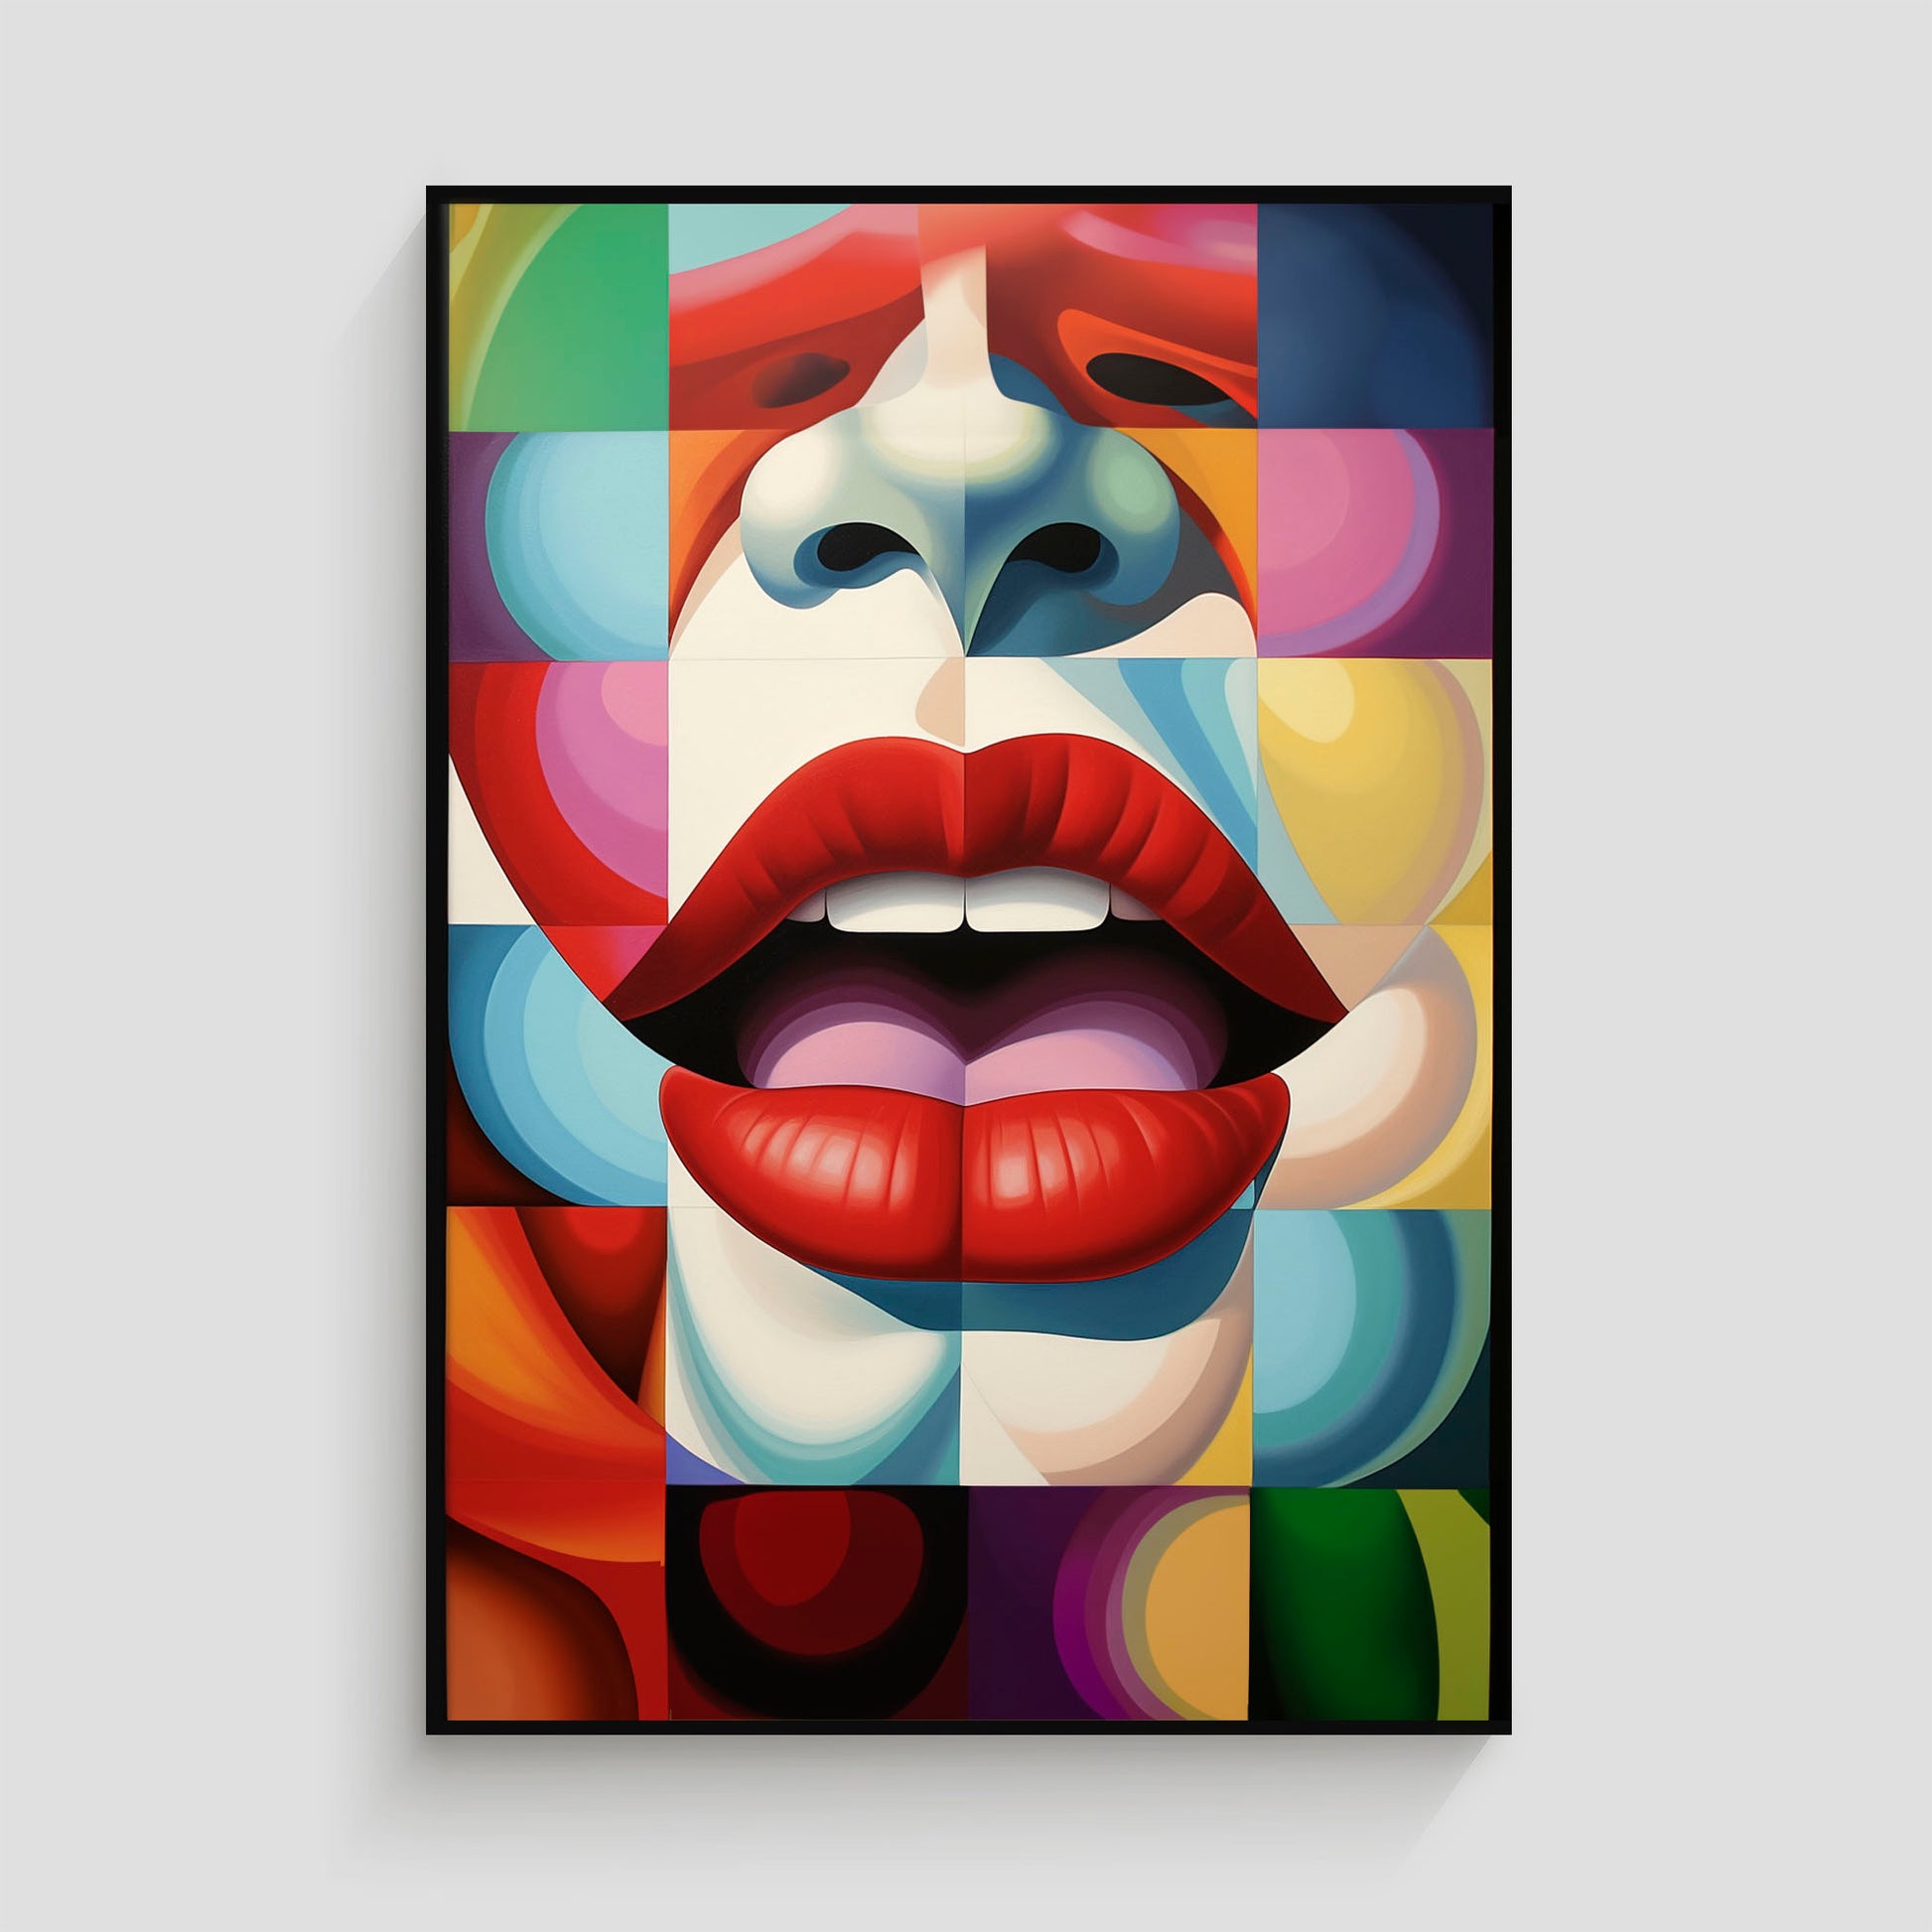 Imagen de arte pop que muestra unos labios rojos abiertos sobre un fondo geométrico colorido, con formas y patrones vibrantes en tonos variados, destacando la nariz y parte del rostro en un estilo abstracto.